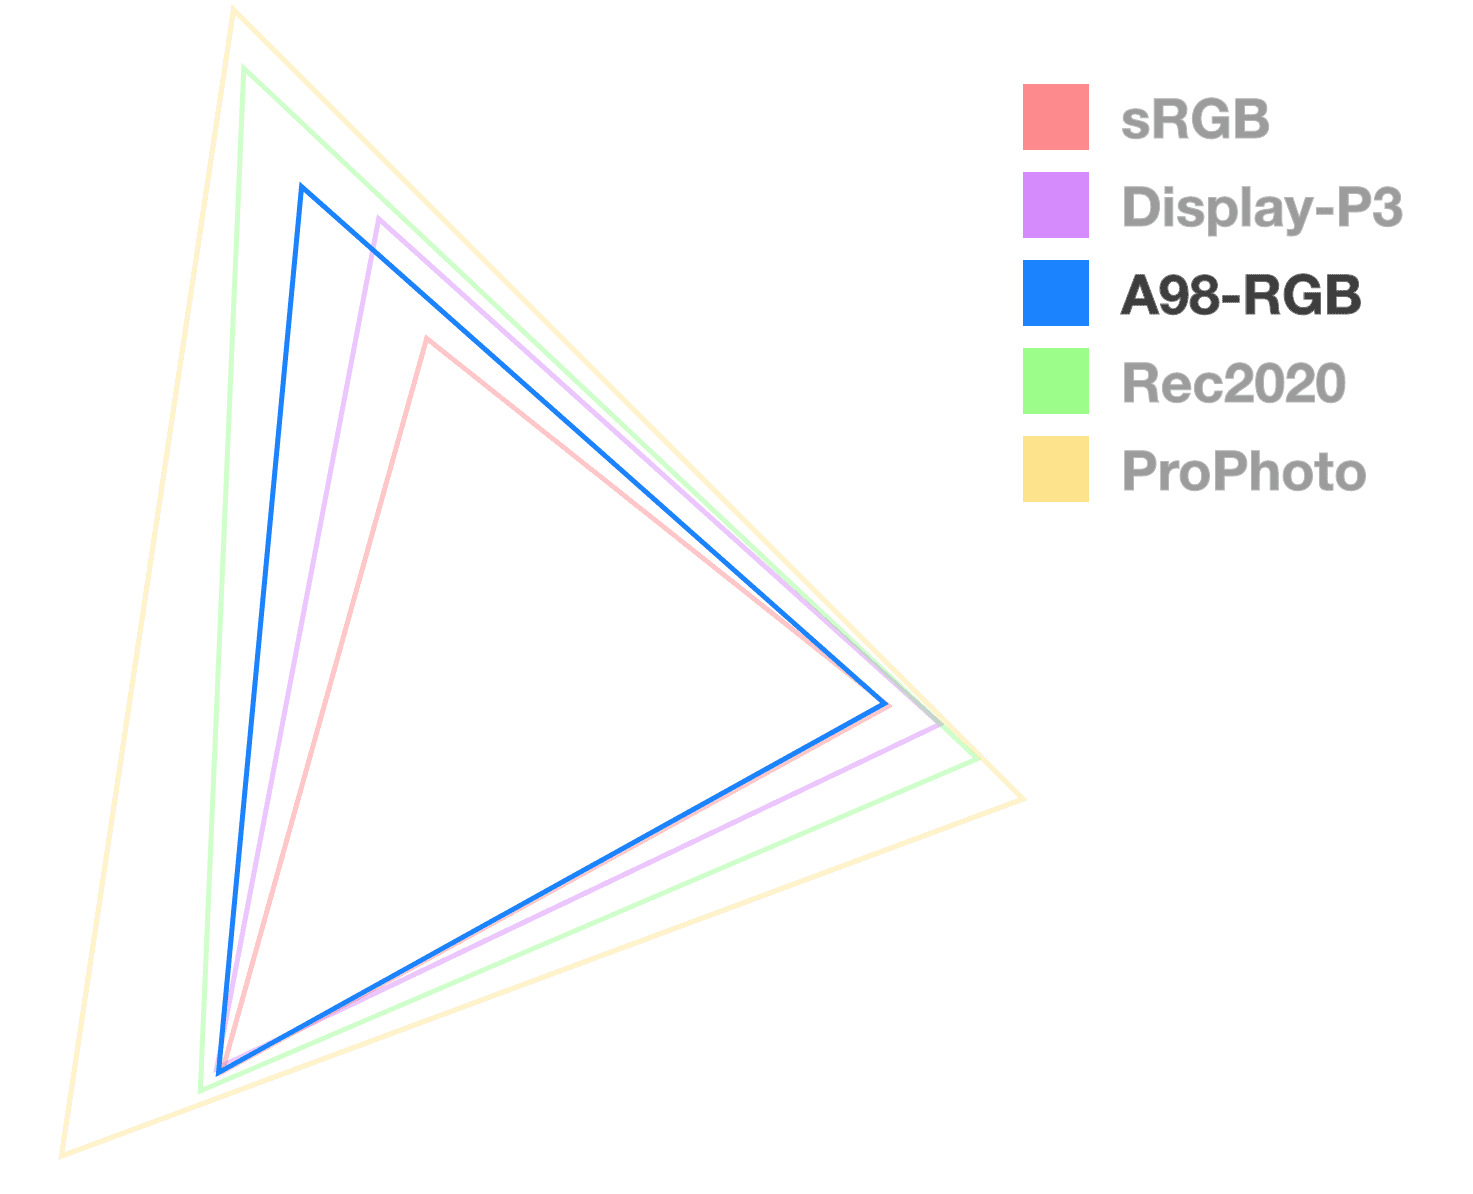 A98 三角形是唯一一个完全不透明的三角形，有助于直观呈现色域的大小。看起来像是中间尺寸的三角形。